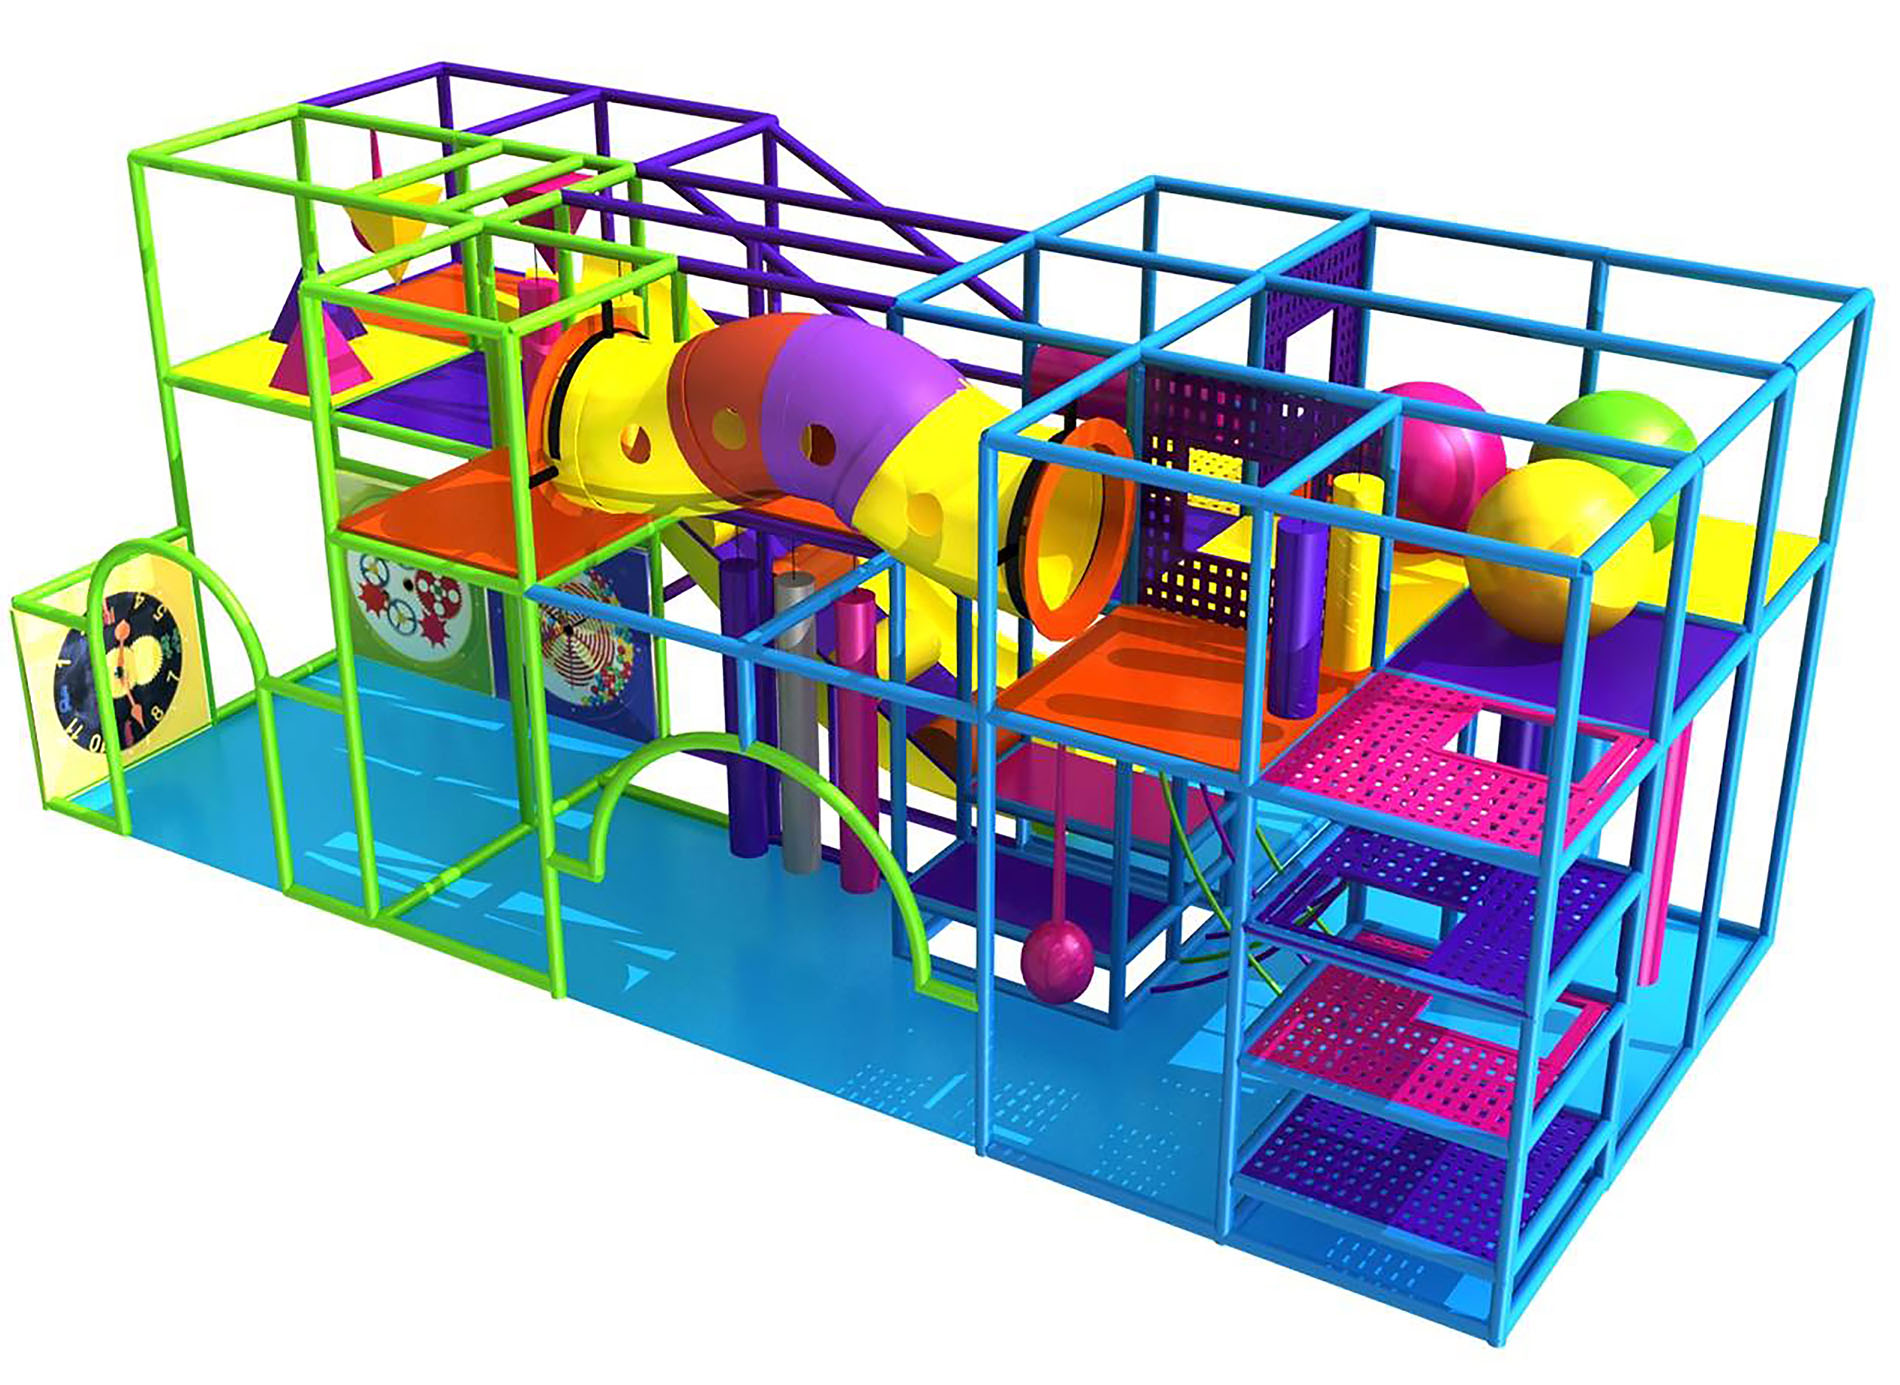 Buy Indoor Playground Equipment Gps406 Indoor Playsystem Size 11 Ft